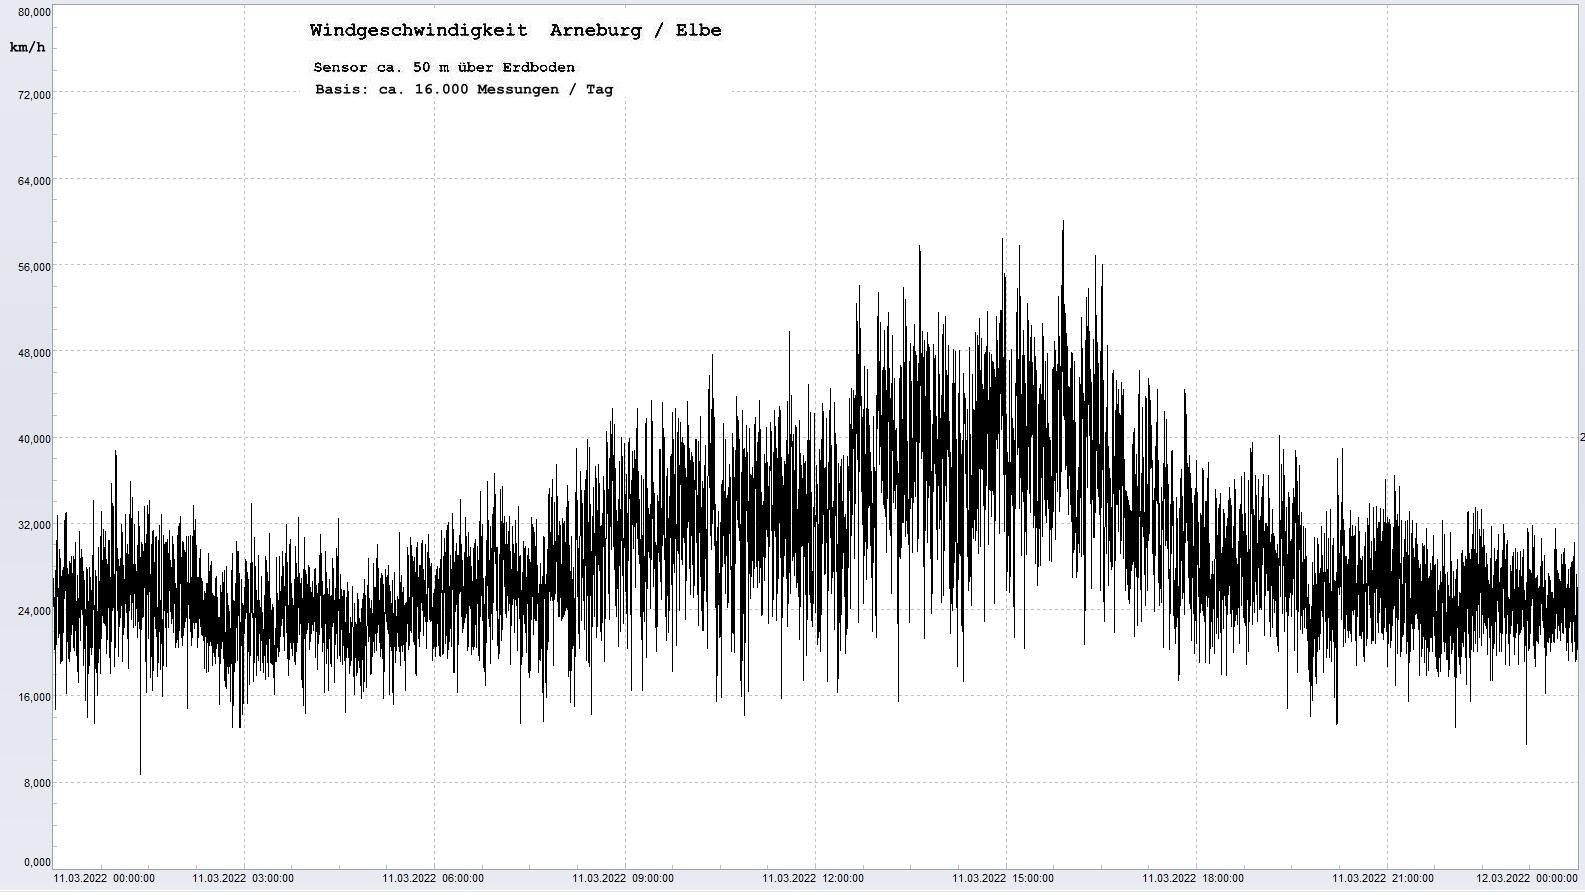 Arneburg Tages-Diagramm Winddaten, 11.03.2022
  Diagramm, Sensor auf Gebäude, ca. 50 m über Erdboden, Basis: 5s-Aufzeichnung